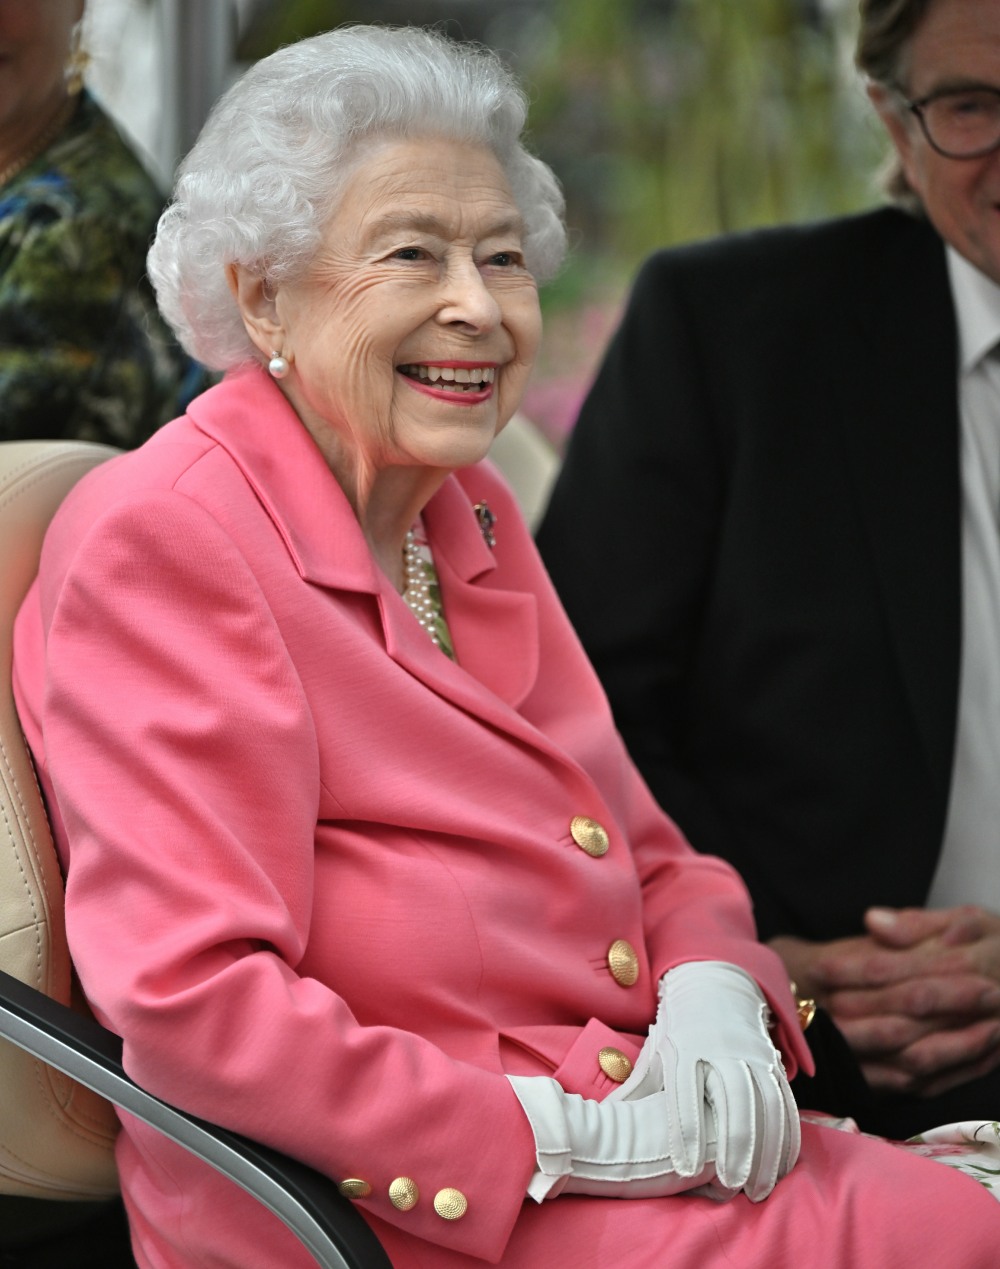 kaltak | Kraliçe Elizabeth, Platinum Jubbly'den önce 'dinlenmek' için Balmoral'a gitti